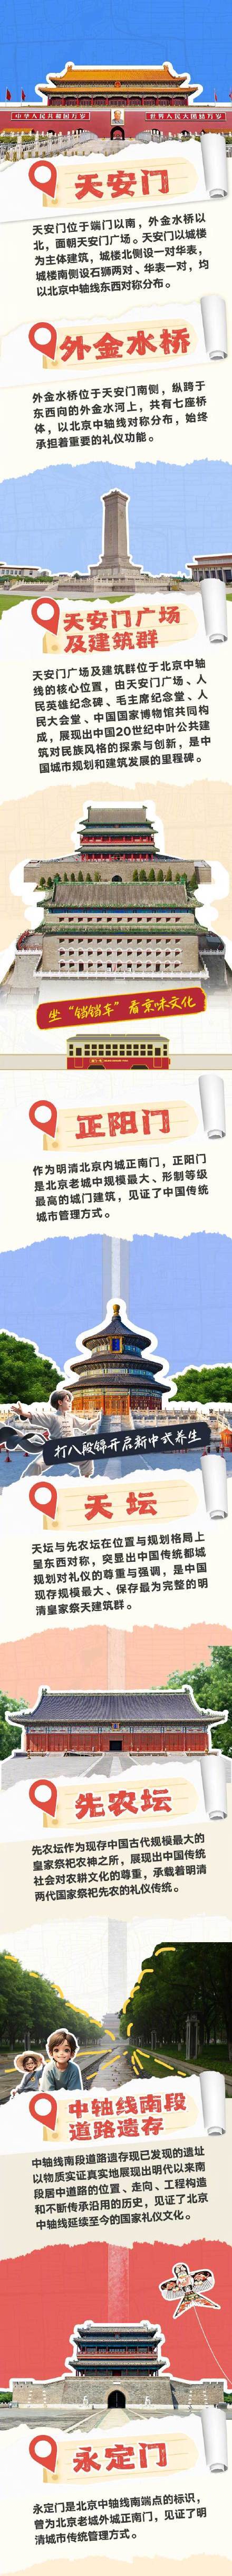 《性爱视频免费在线》北京中轴线CityWalk攻略 文化遗产新旅程